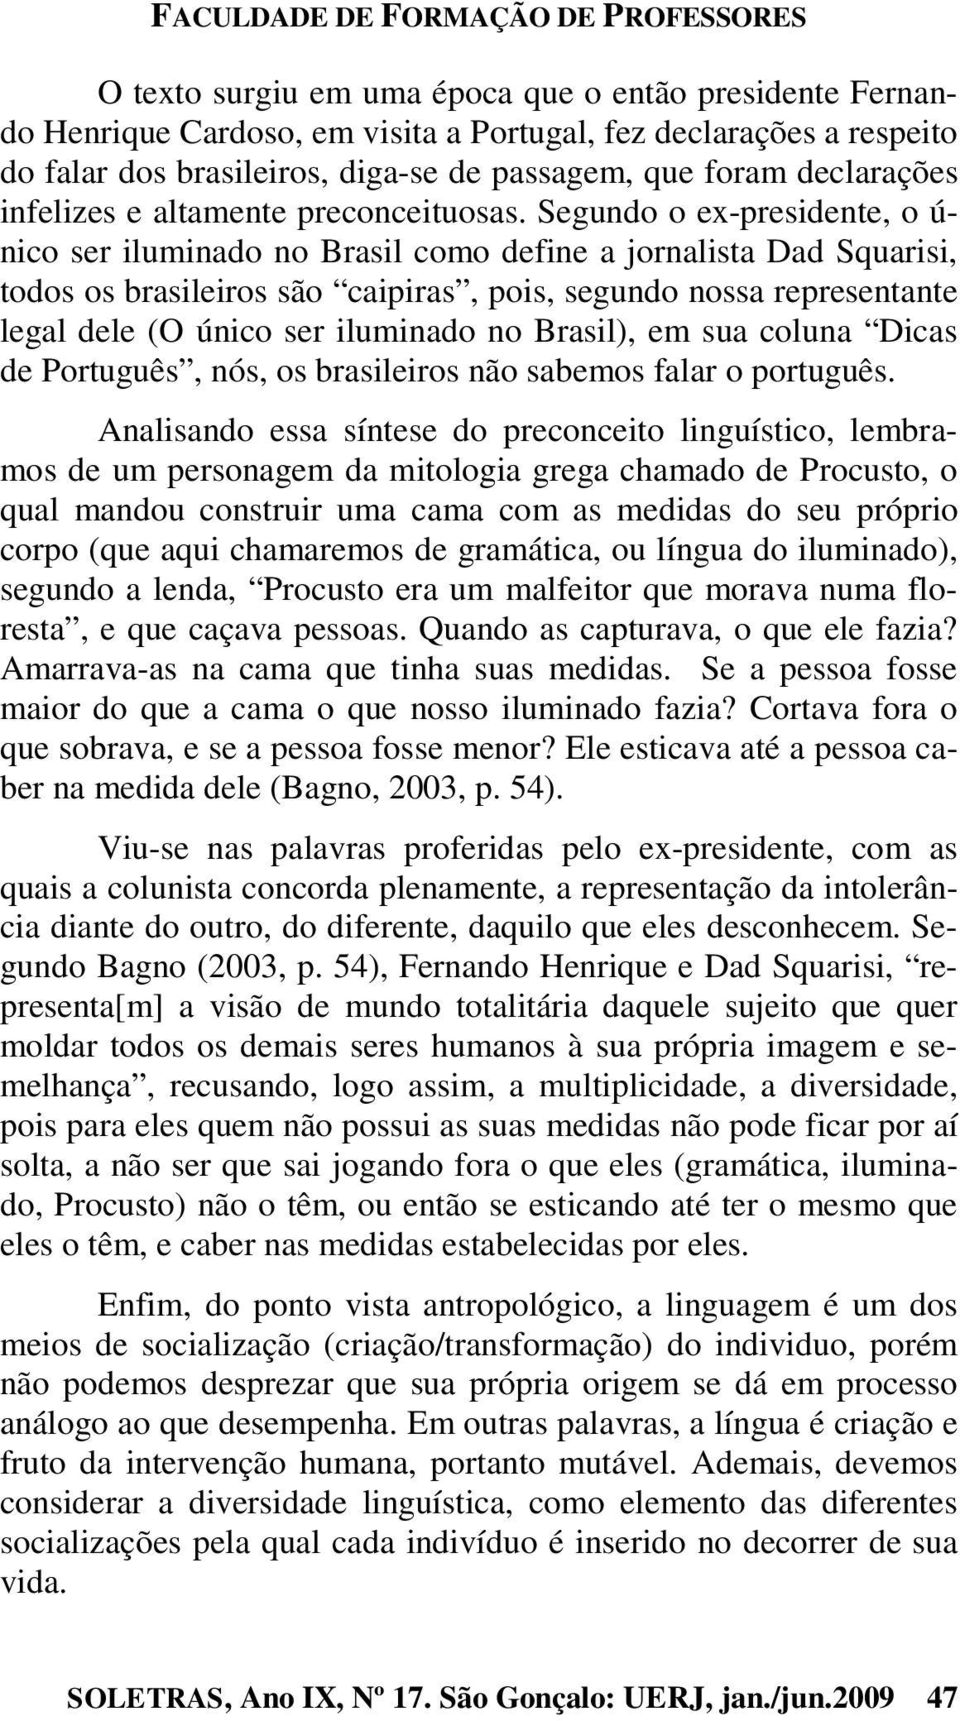 Segundo o ex-presidente, o ú- nico ser iluminado no Brasil como define a jornalista Dad Squarisi, todos os brasileiros são caipiras, pois, segundo nossa representante legal dele (O único ser